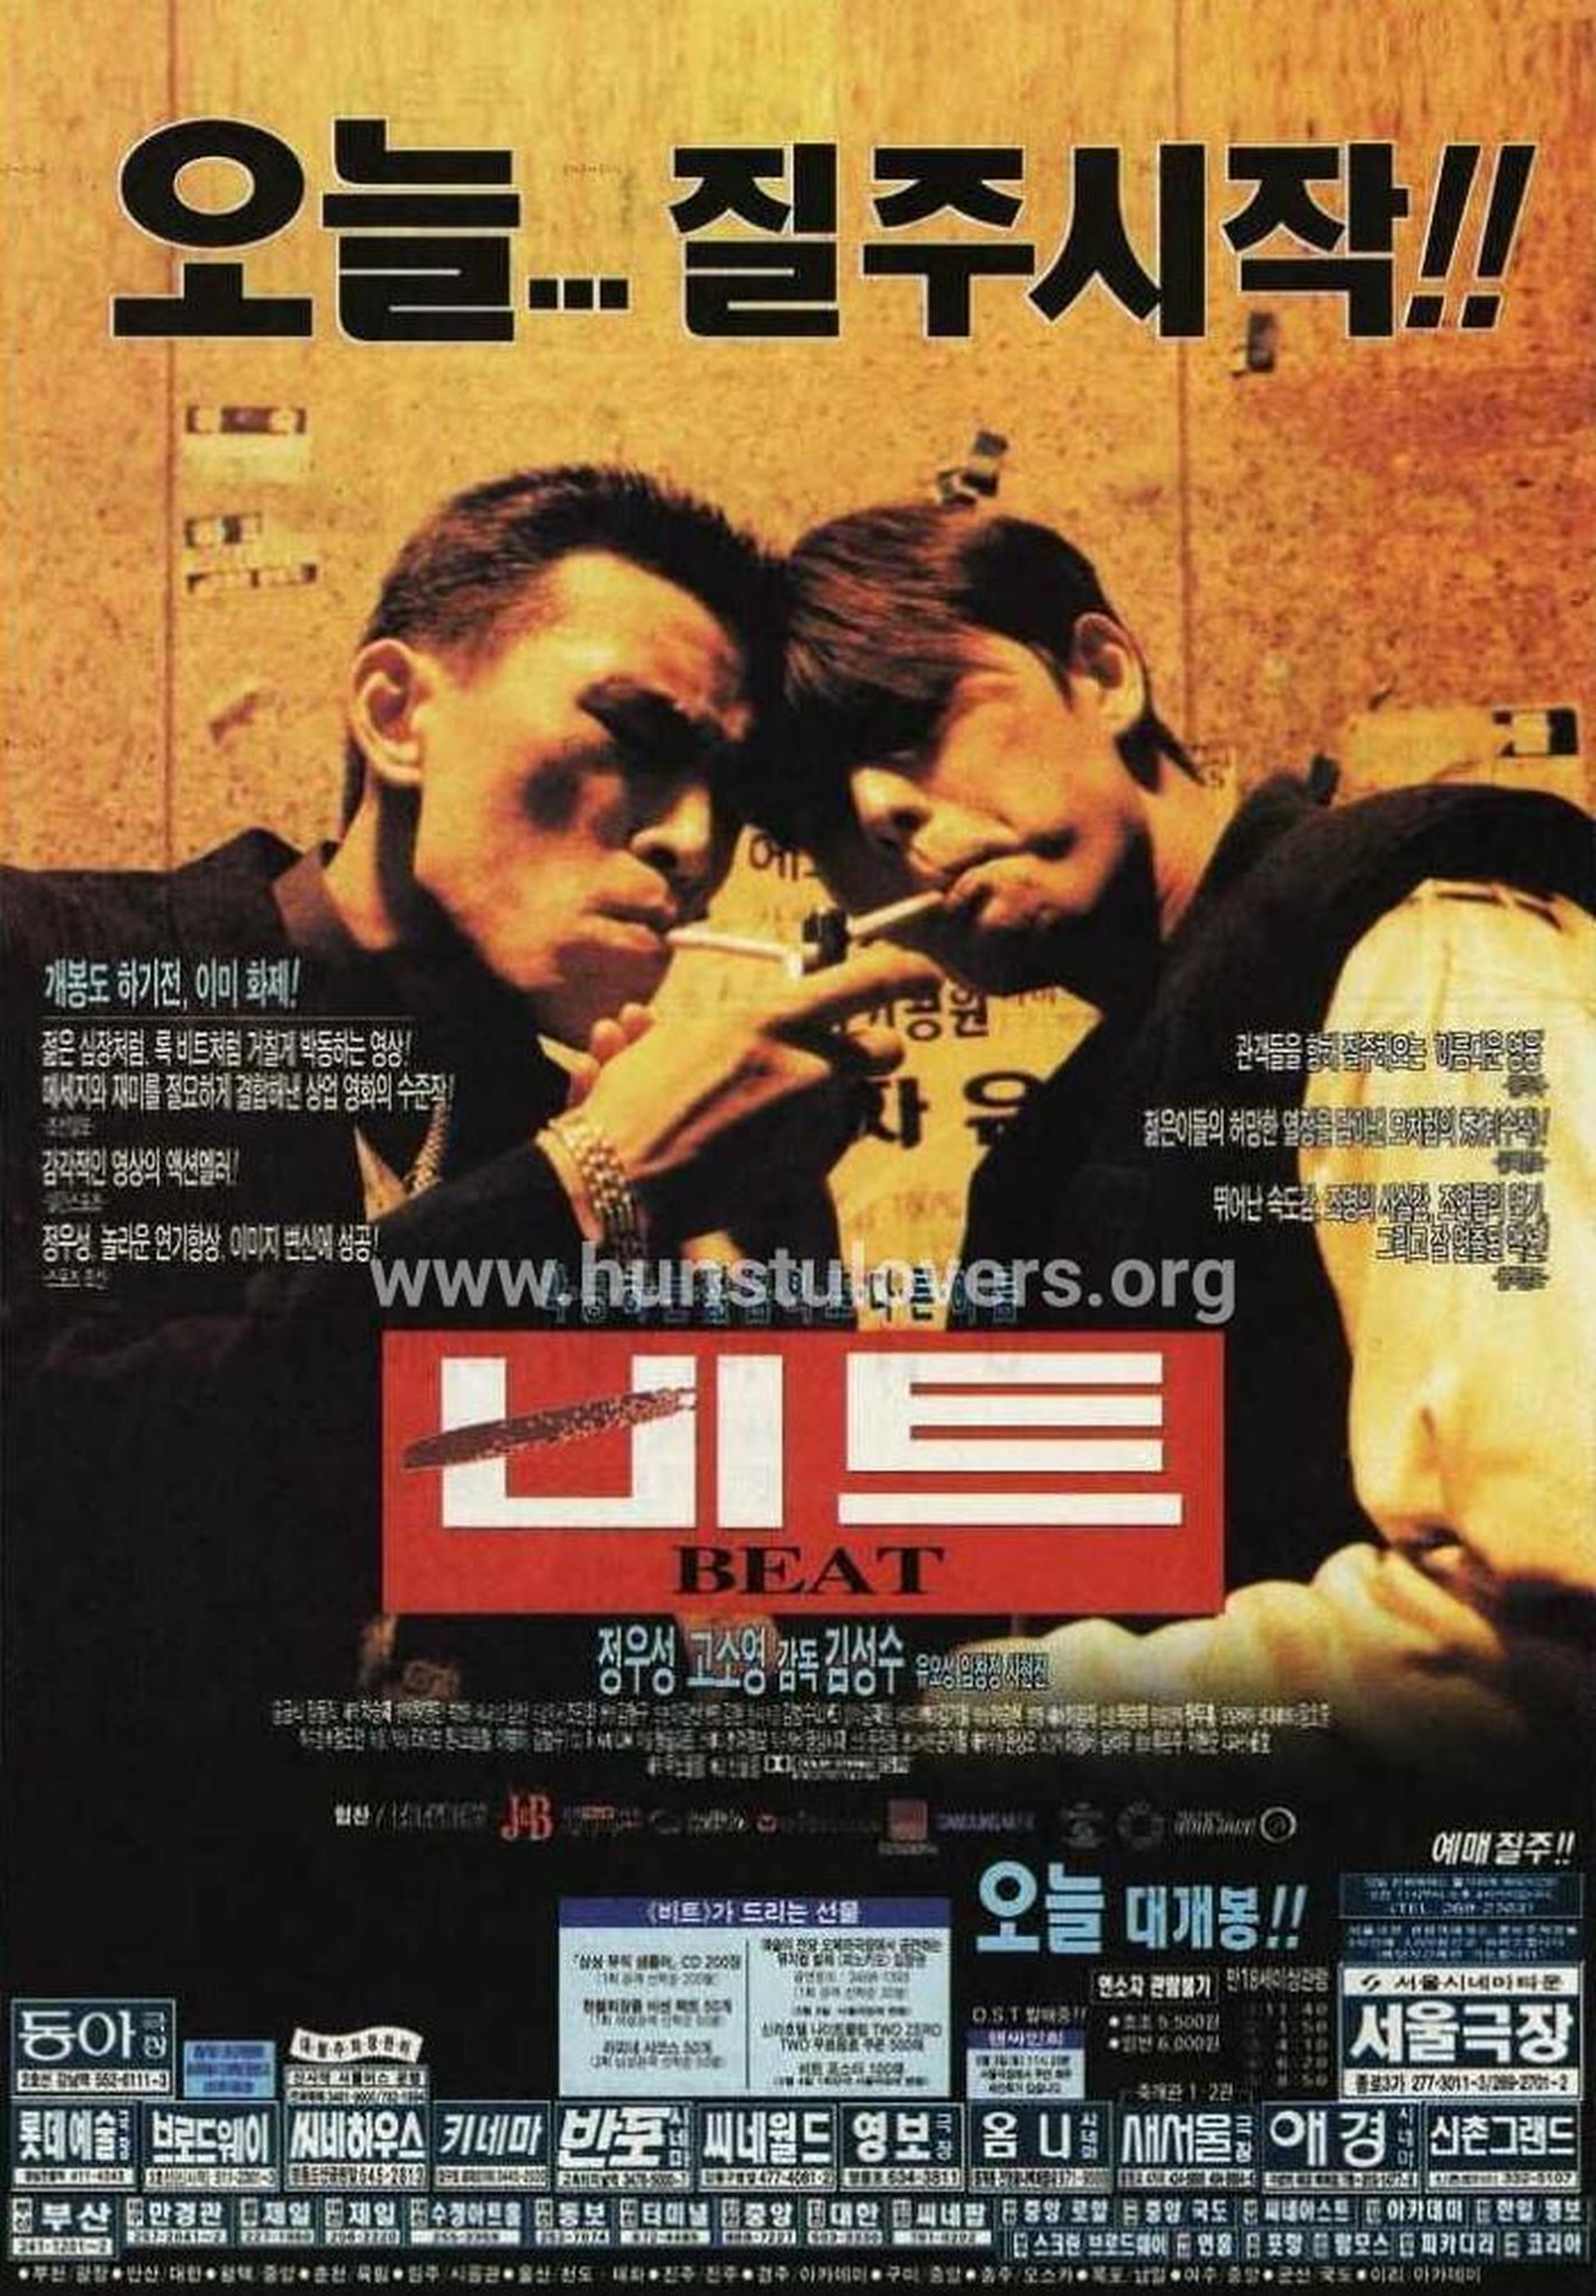 【1990-2000】《心跳》(1997) 导演金成洙。这部电影以“我没有明天”的悲壮独白开始，并配以长达2分30秒的激烈动作场面是韩国电影从来没有使用过的。郑大骑摩托张开双臂的镜头像极了刘德华《追梦人》里骑摩托的一幕。